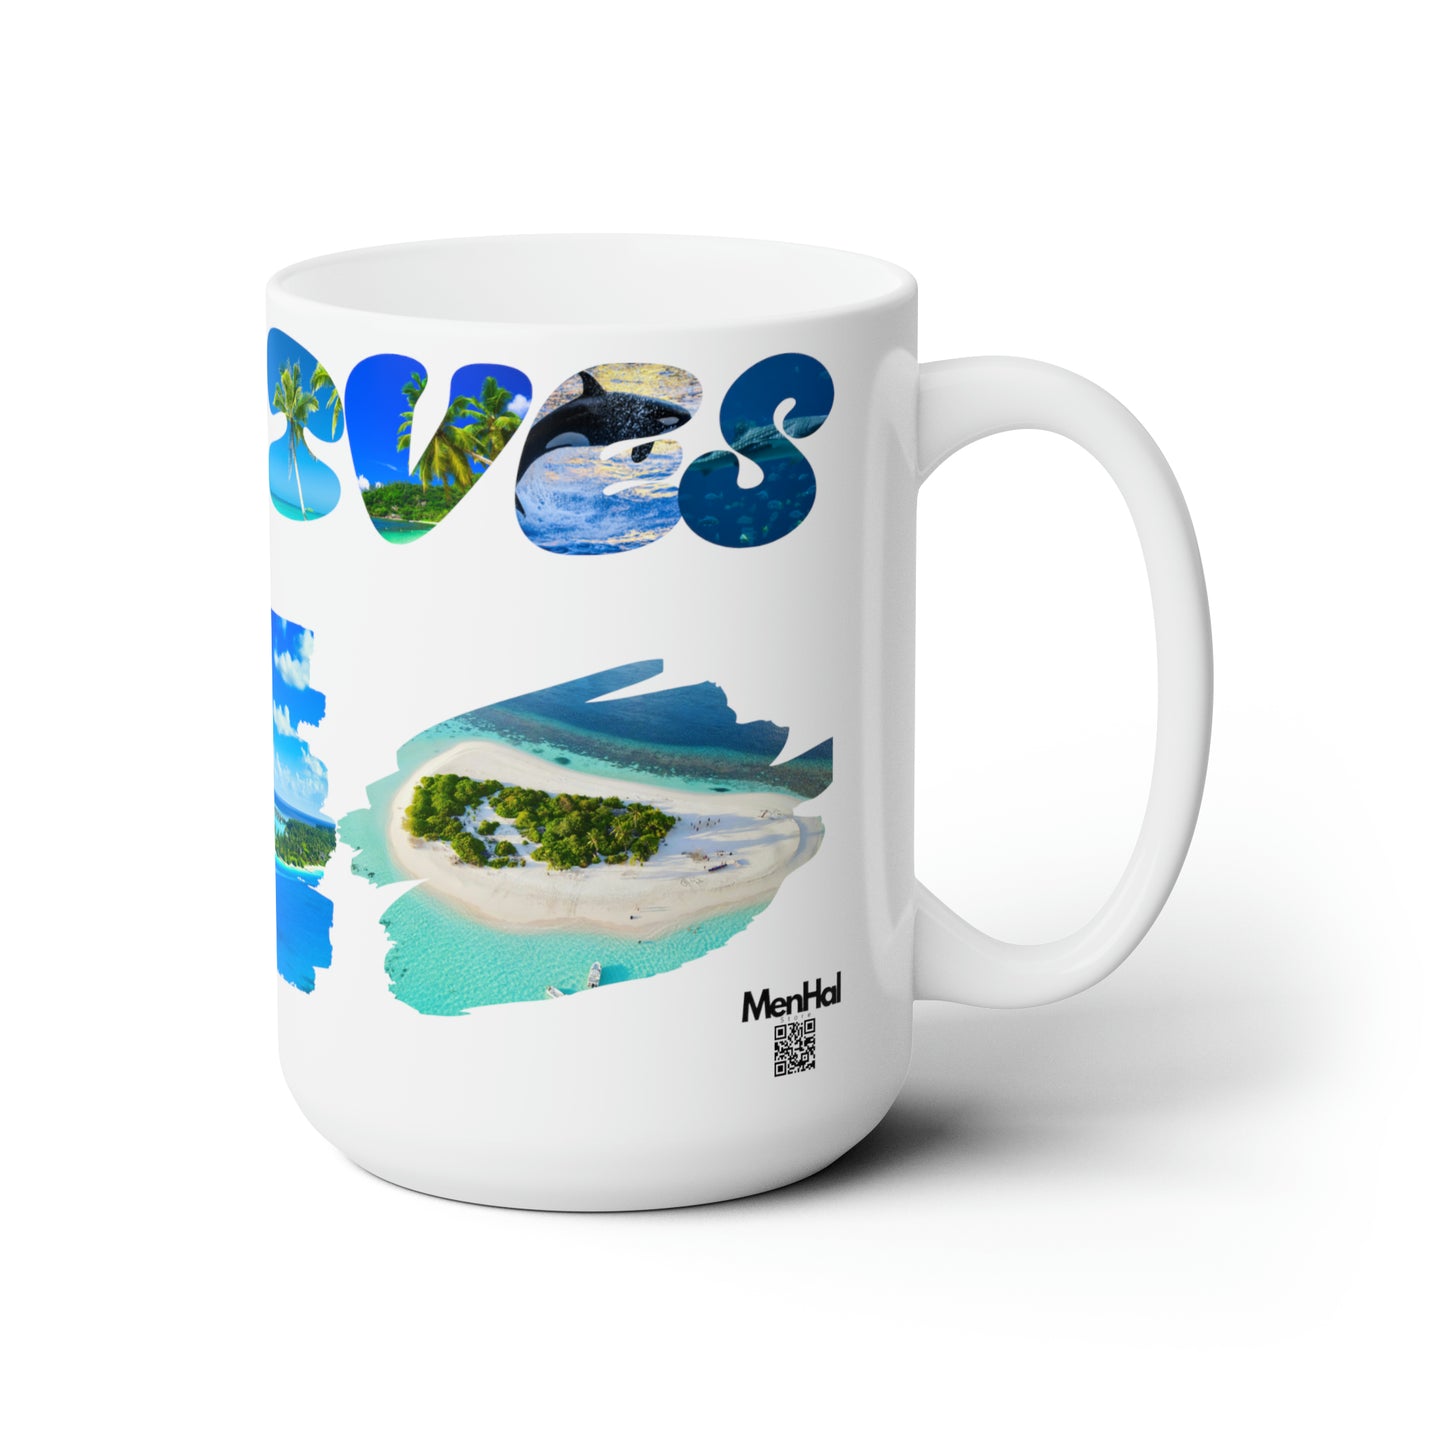 Maldives - Ceramic Mug 15oz